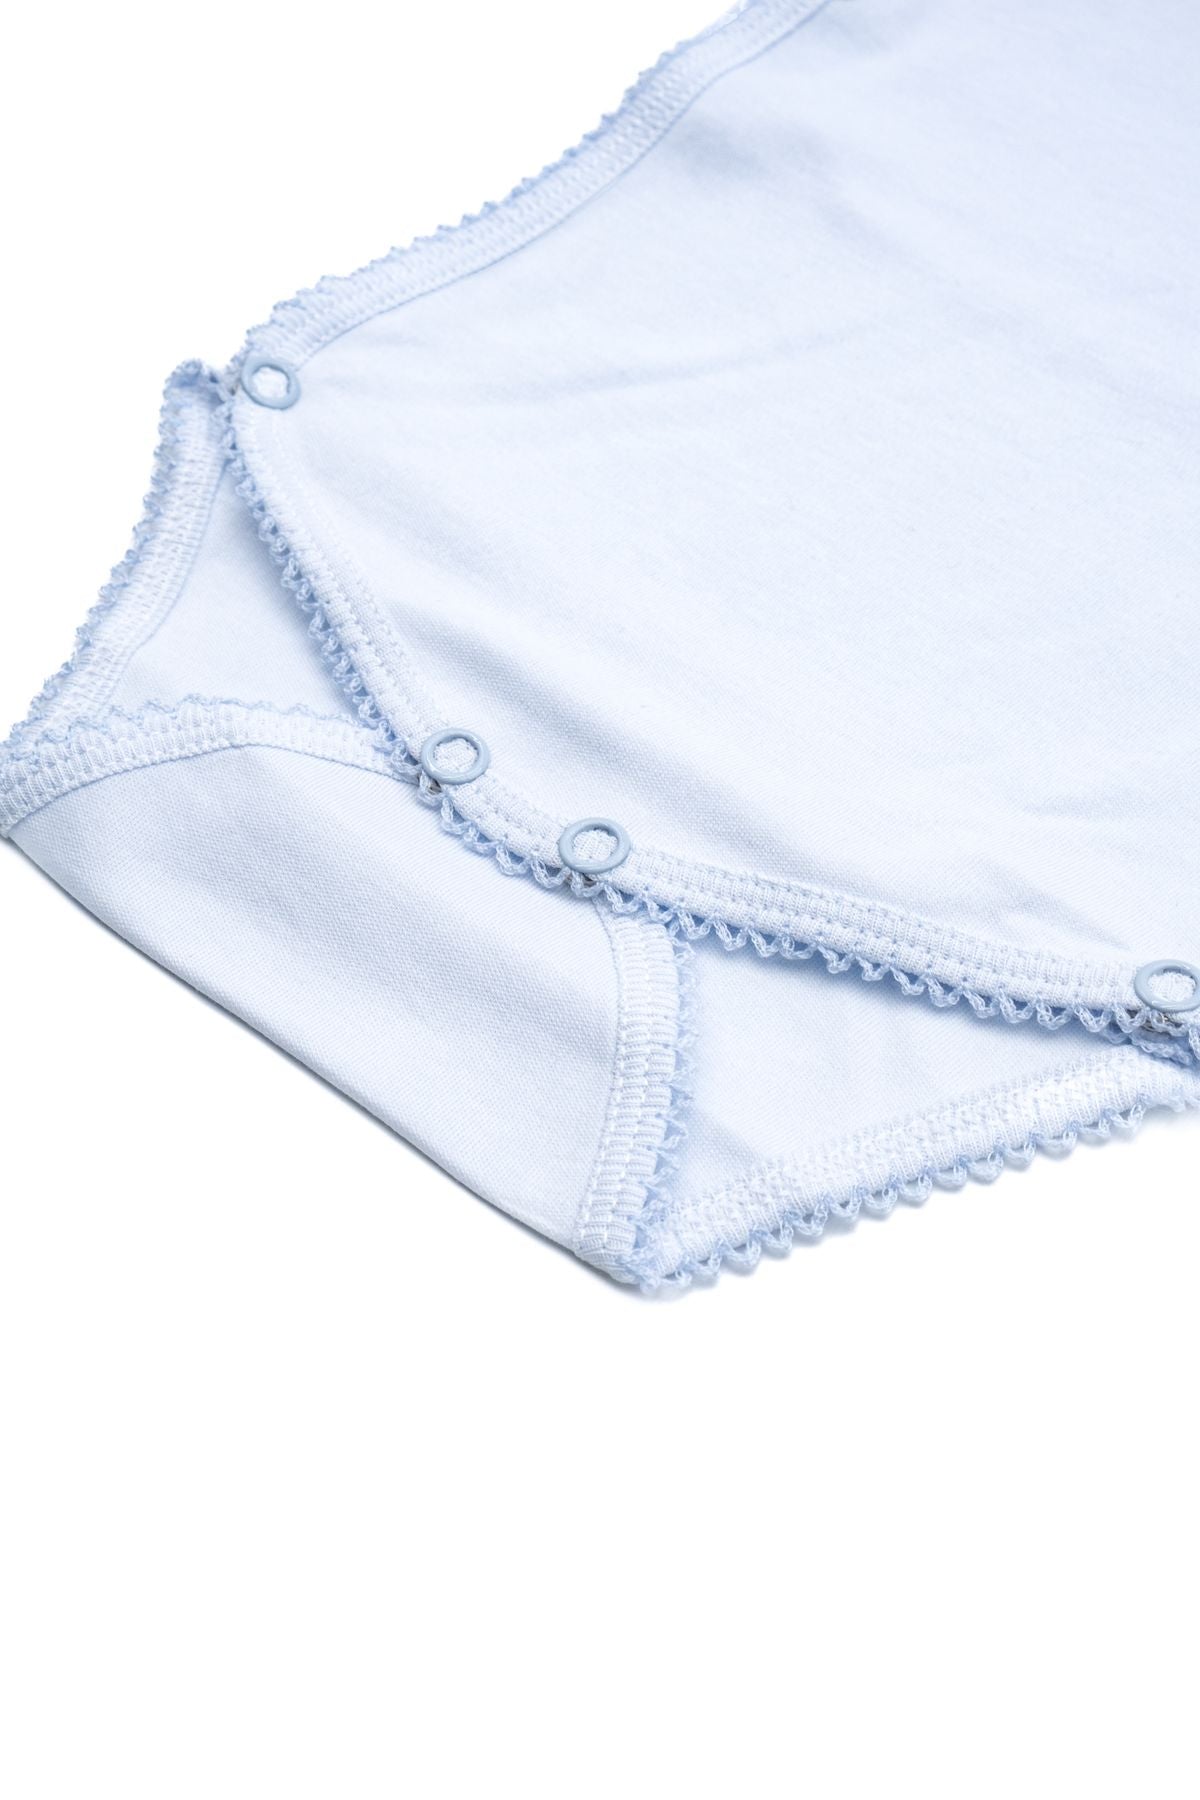 Cotton underwear body - BG56./M